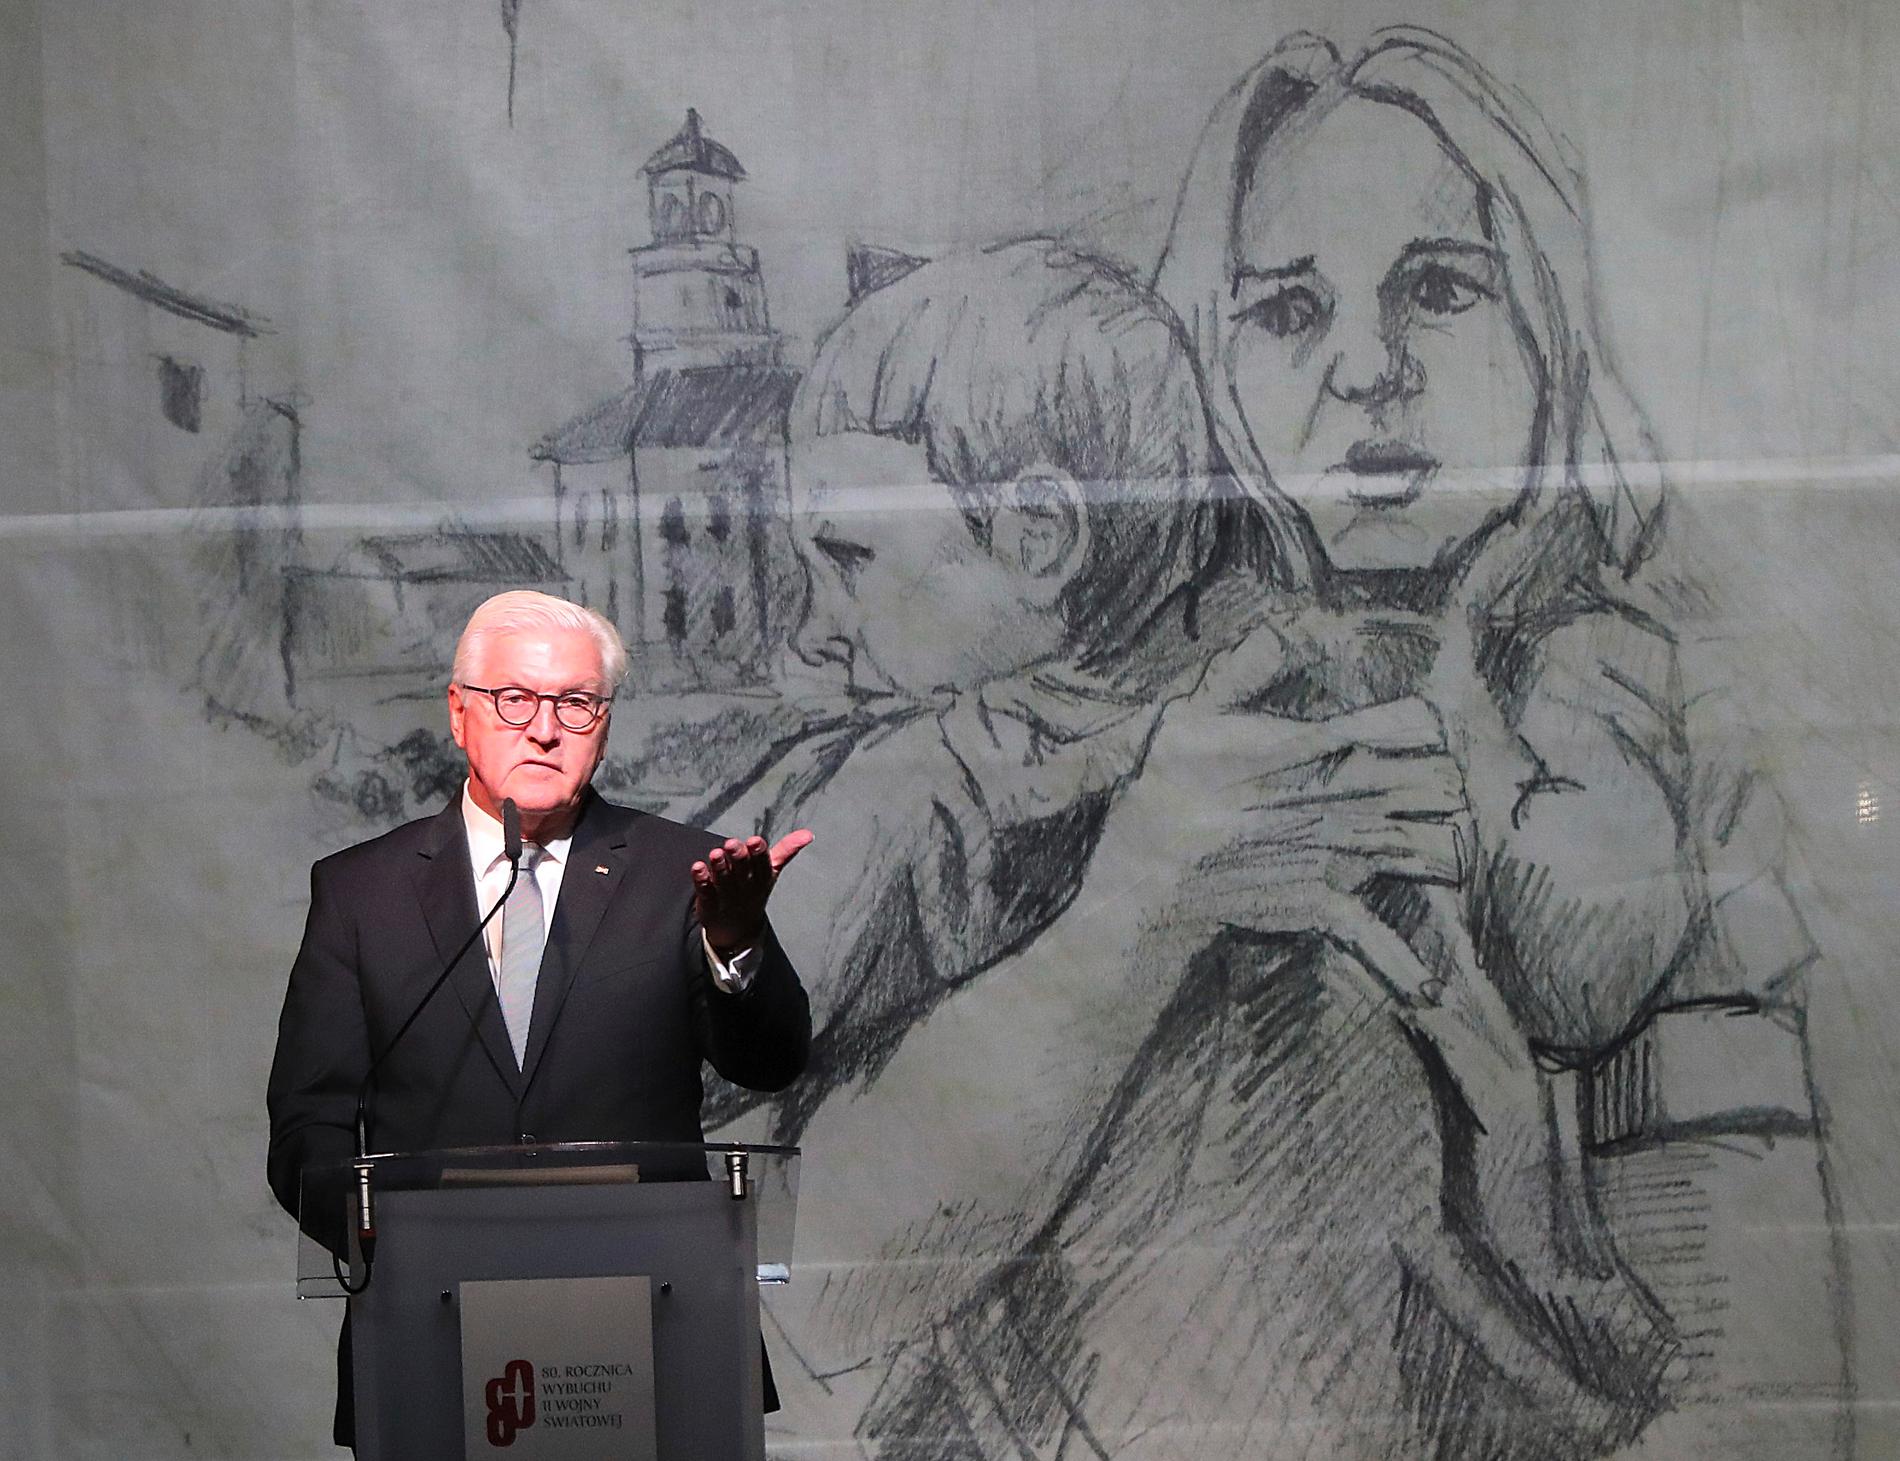 Tysklands förbundspresident Frank-Walter Steinmeier bad om förlåtelse under en minnesceremoni i Wieluń.